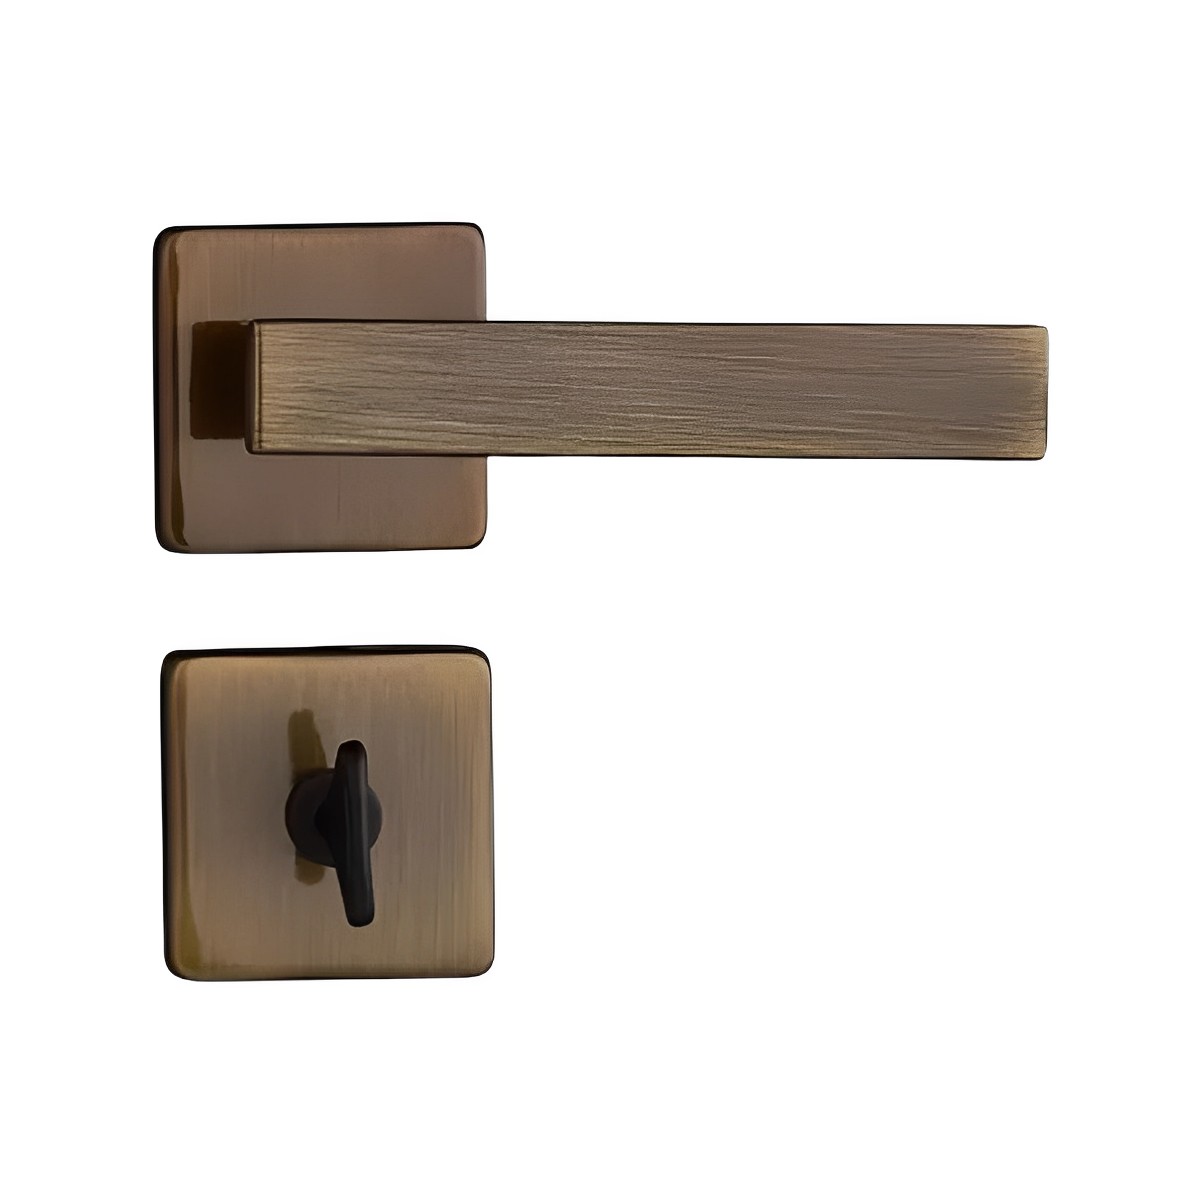 Fechadura Banheiro Concept Quadrada 409 Bronze Oxidado - Pado